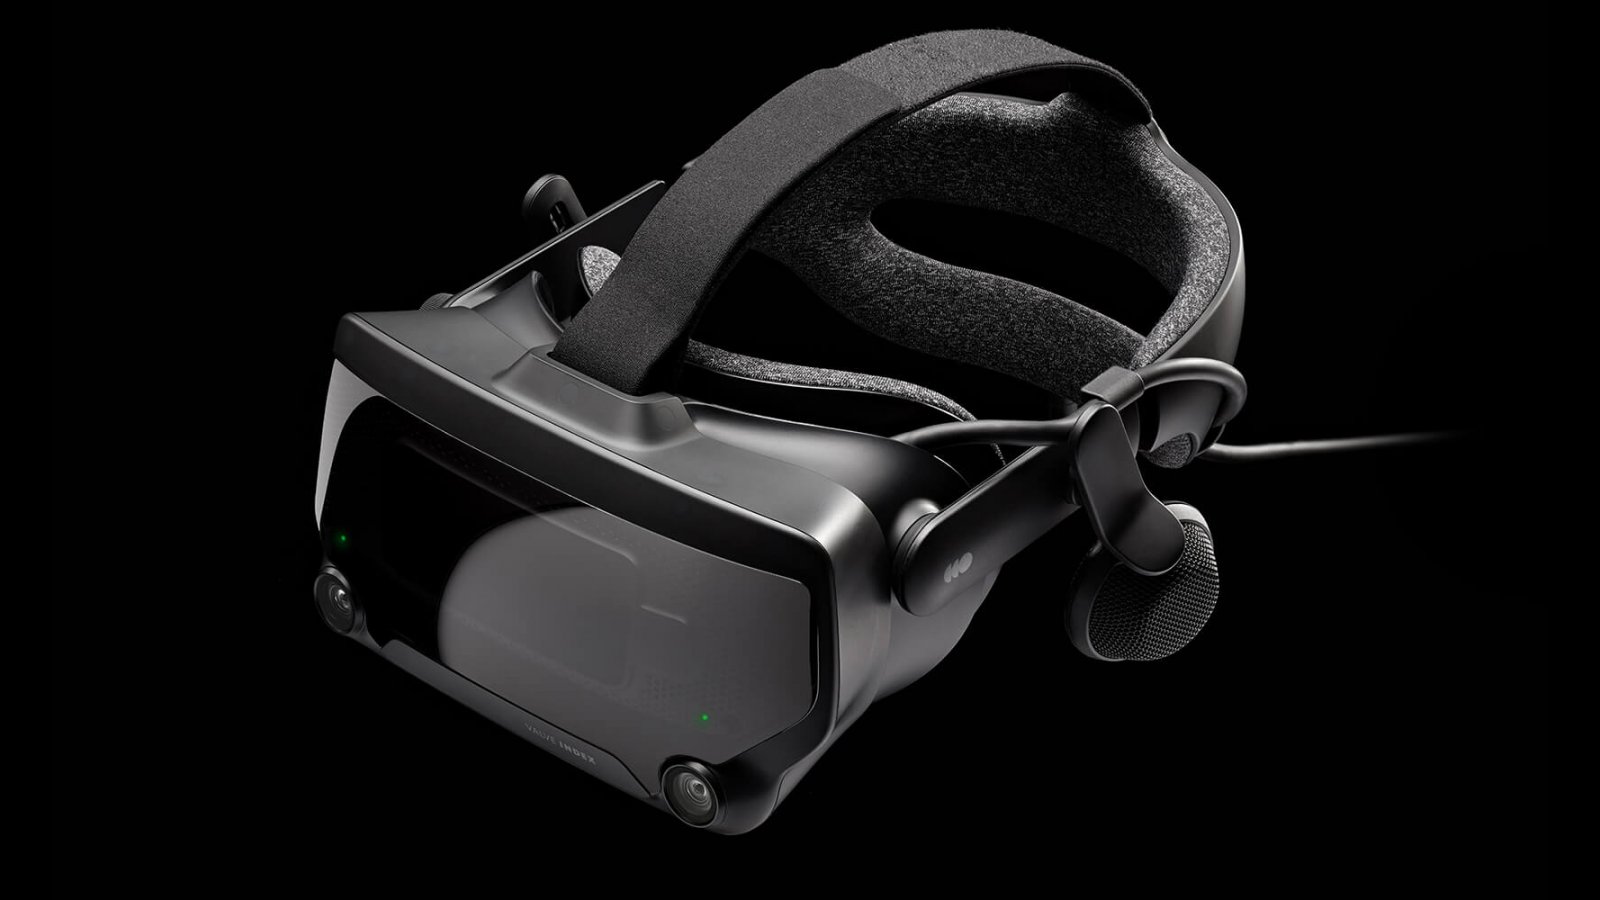 Valve ha fermato i lavori su di una console VR perché troppo costosa, per Pierre-Loup Griffais